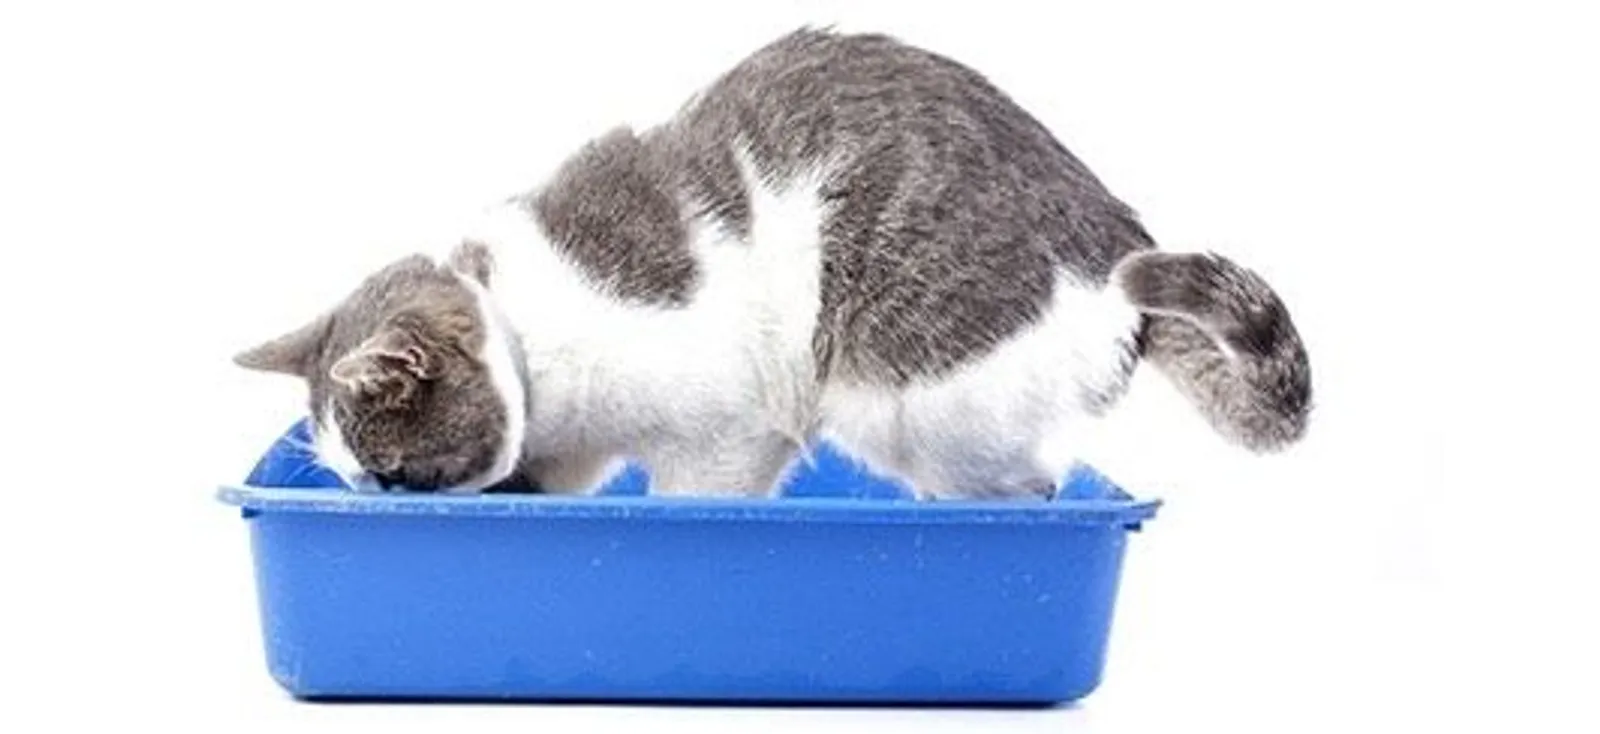 7 Tips Agar Kotak Pasir Kucing Tidak Bau, Rumah Terasa Nyaman, Deh!